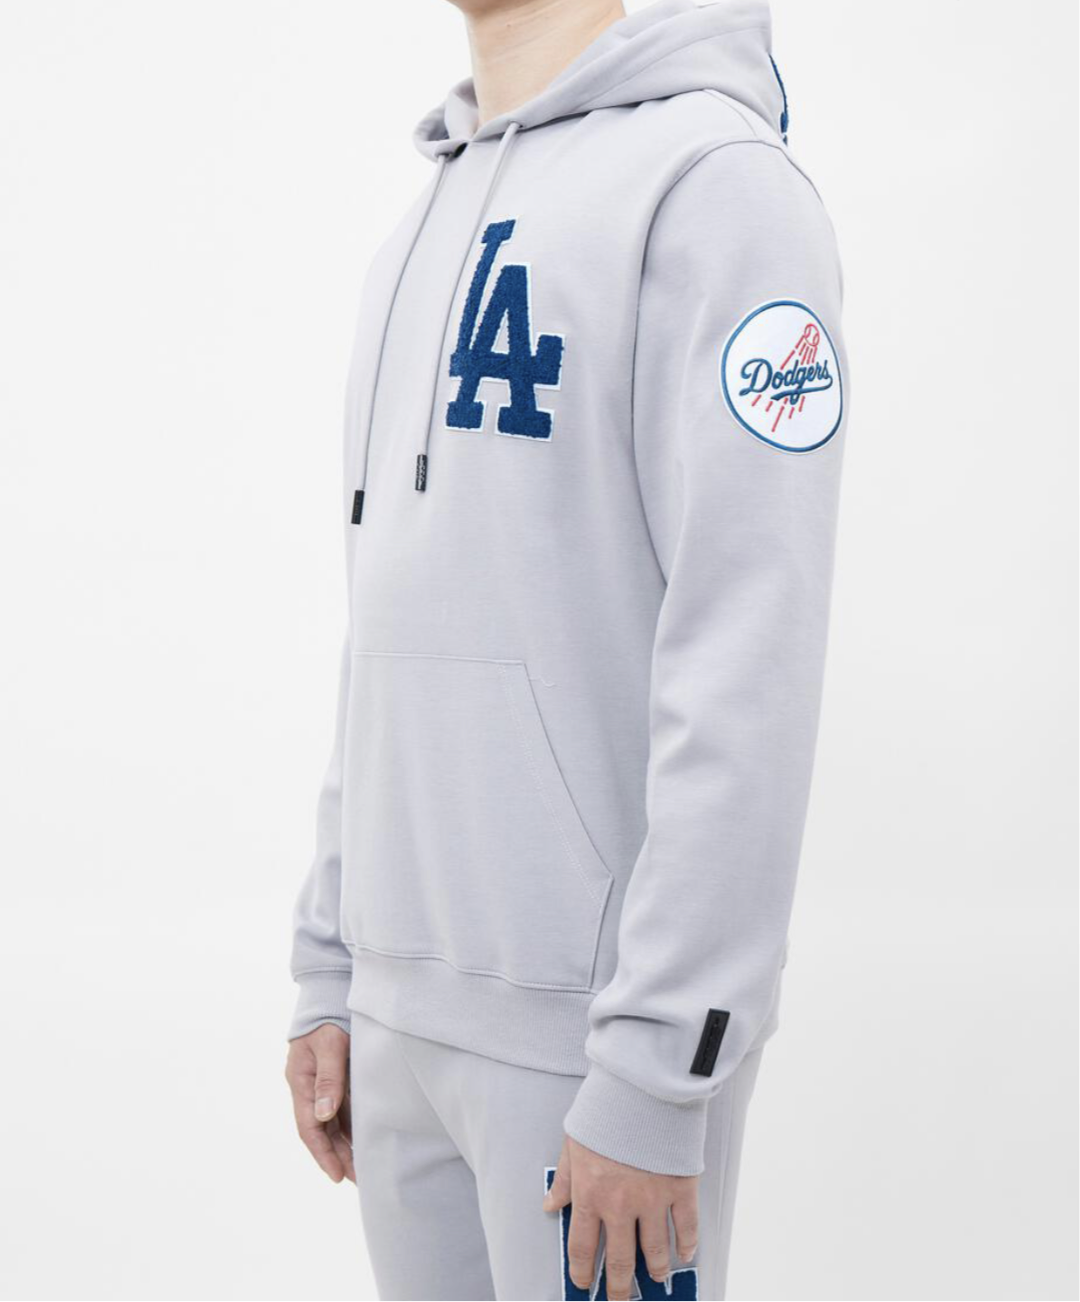 Men’s Pro Standard LA Dodgers 2 Piece Sweat Suit Set